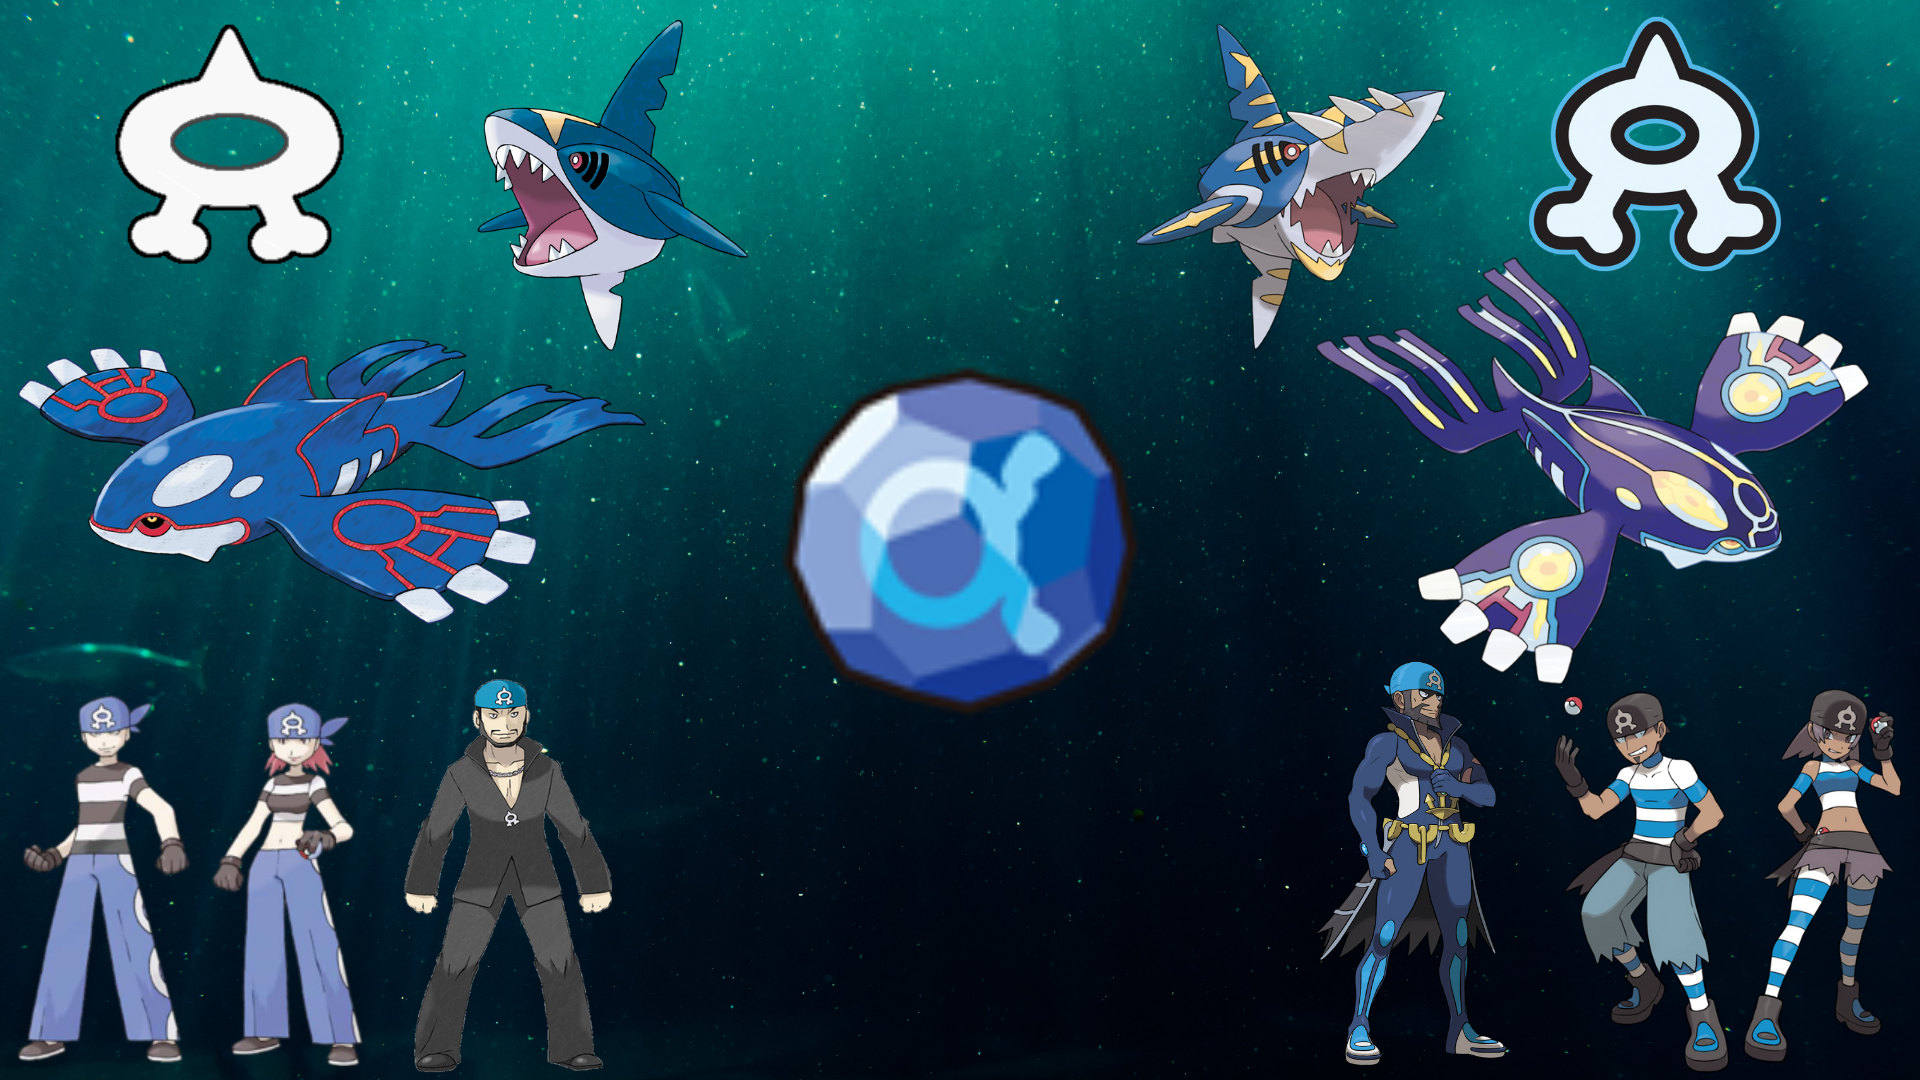 Team Aqua Wallpaper I Made. Pokemon art, Jessie team rocket, Aqua wallpaper